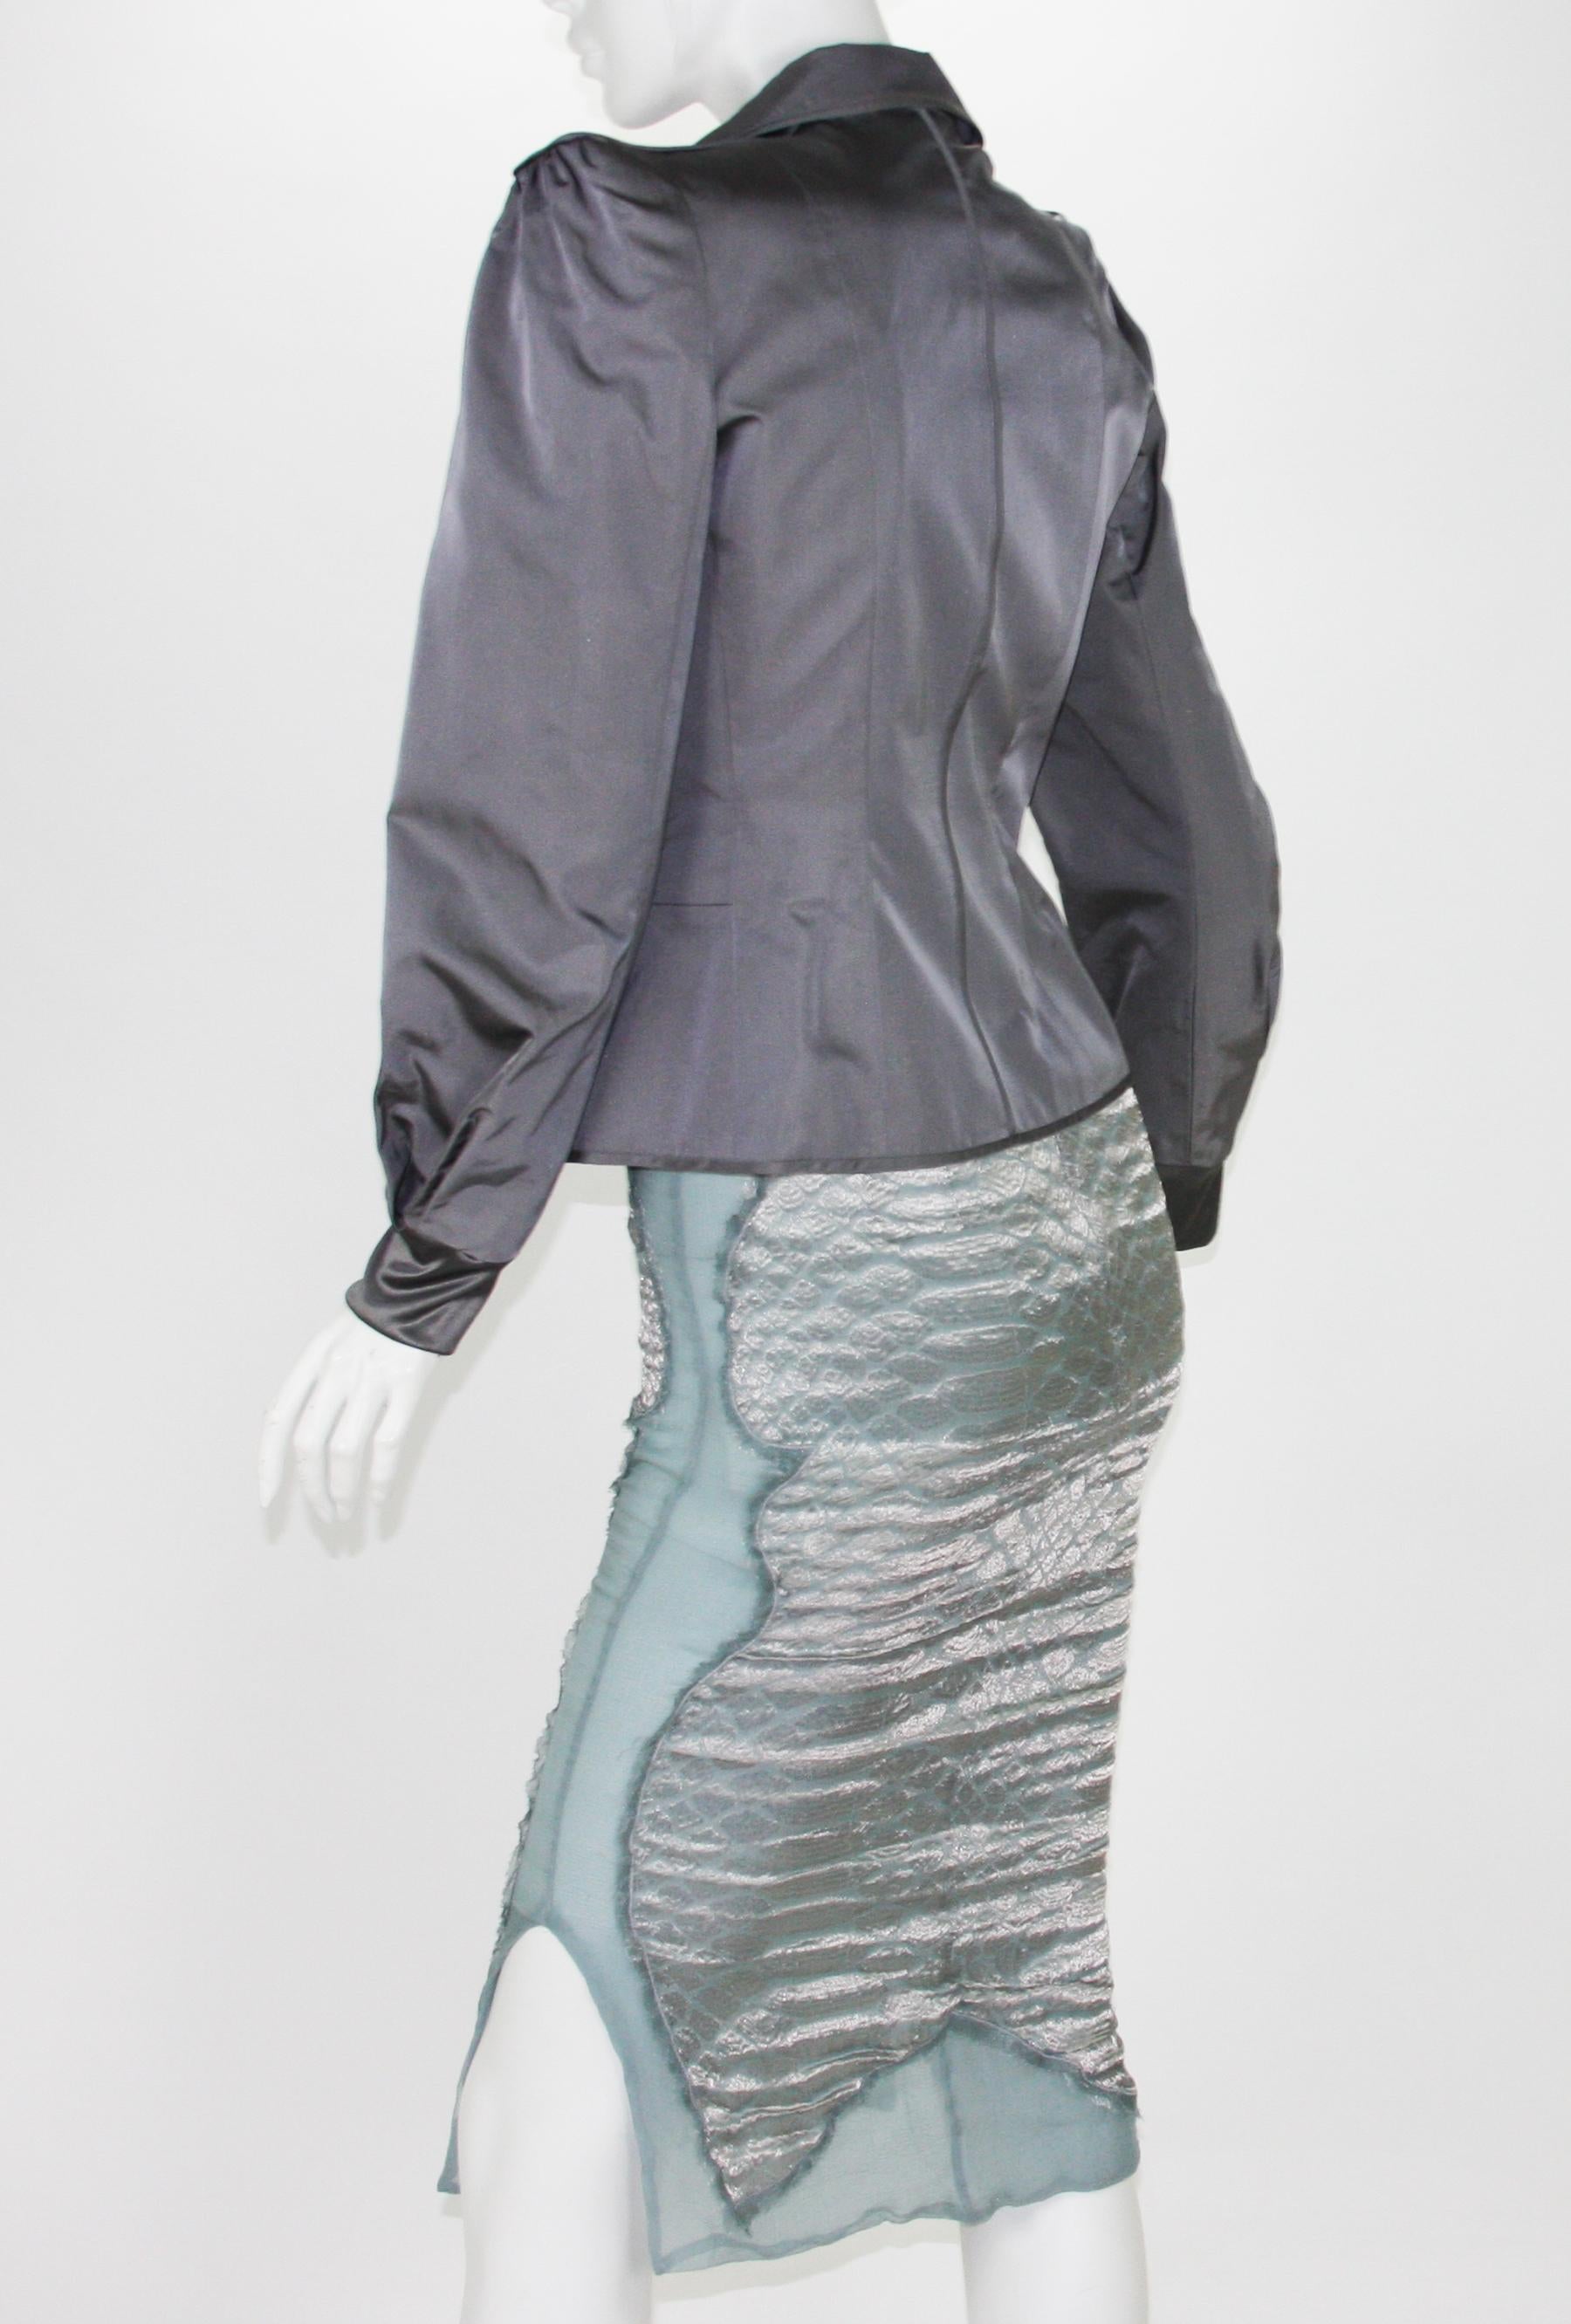 Tom Ford pour Yves Saint Laurent F/W 2004 - Tailleur jupe pagode en soie, tailleur 38/6 en vente 1